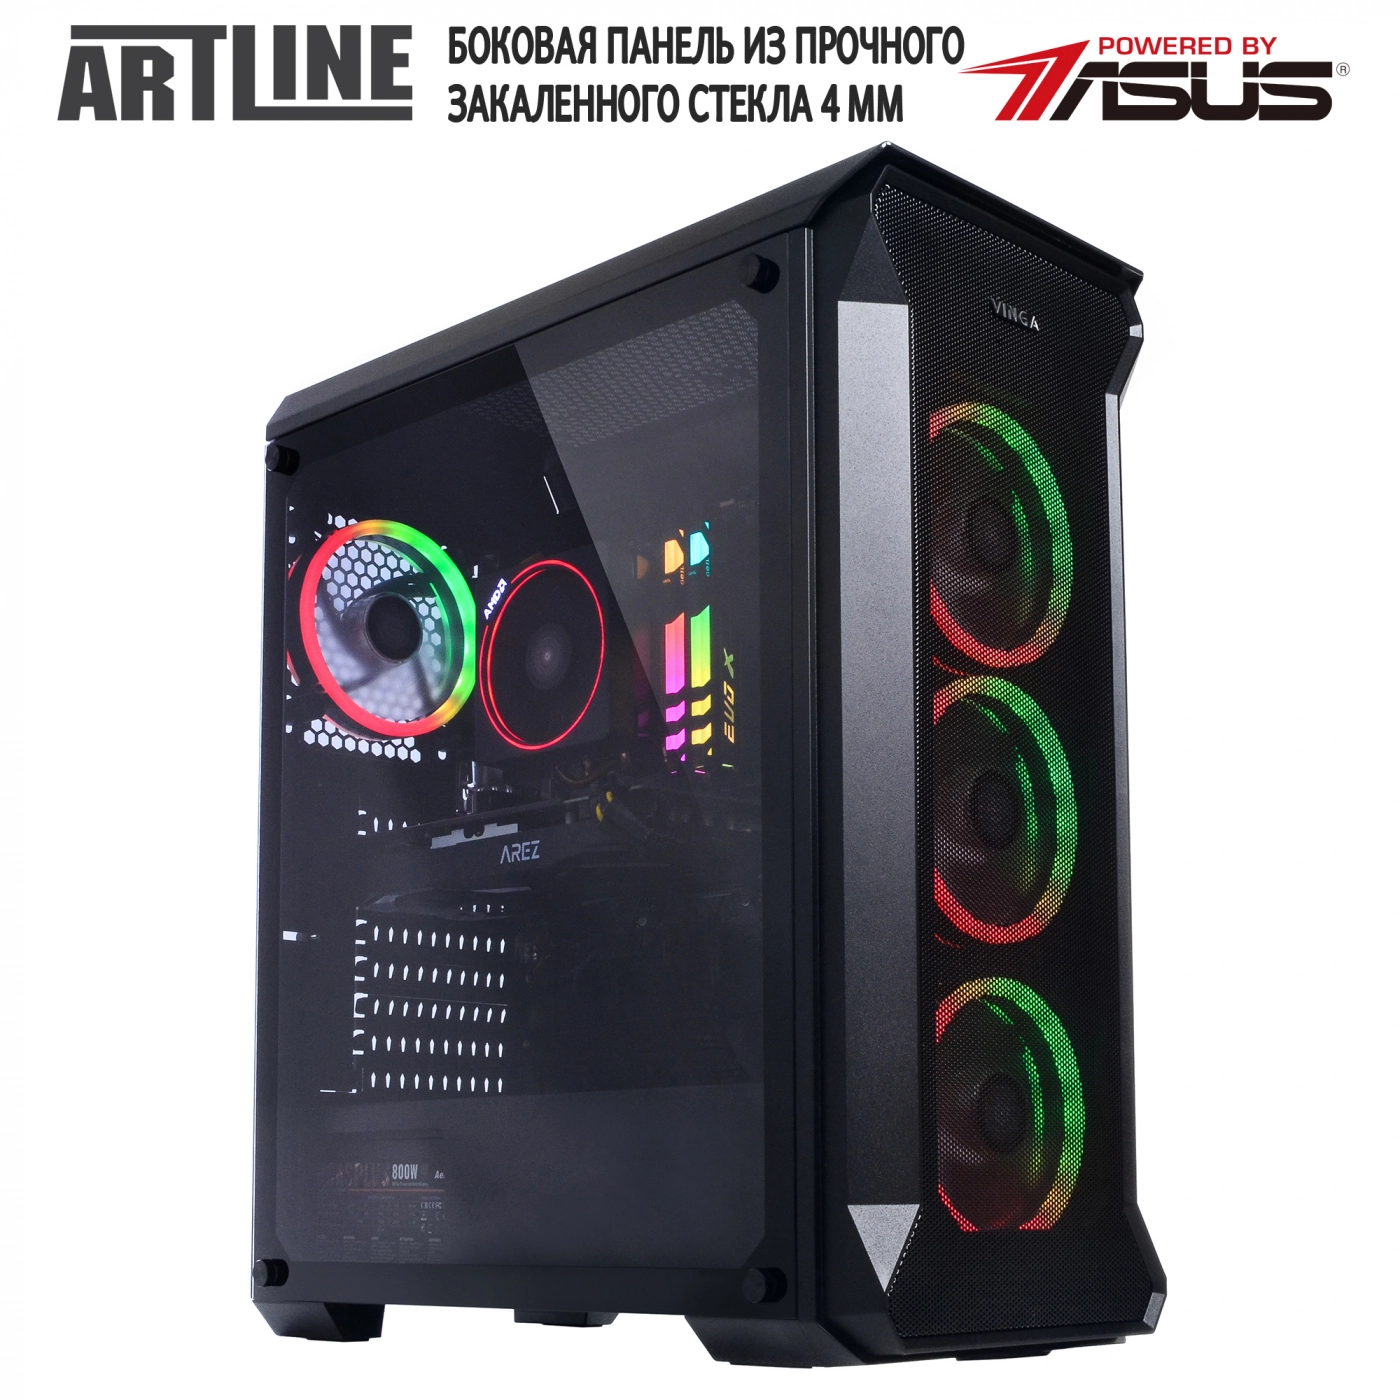 Купить Компьютер ARTLINE Gaming X68v01 - фото 10